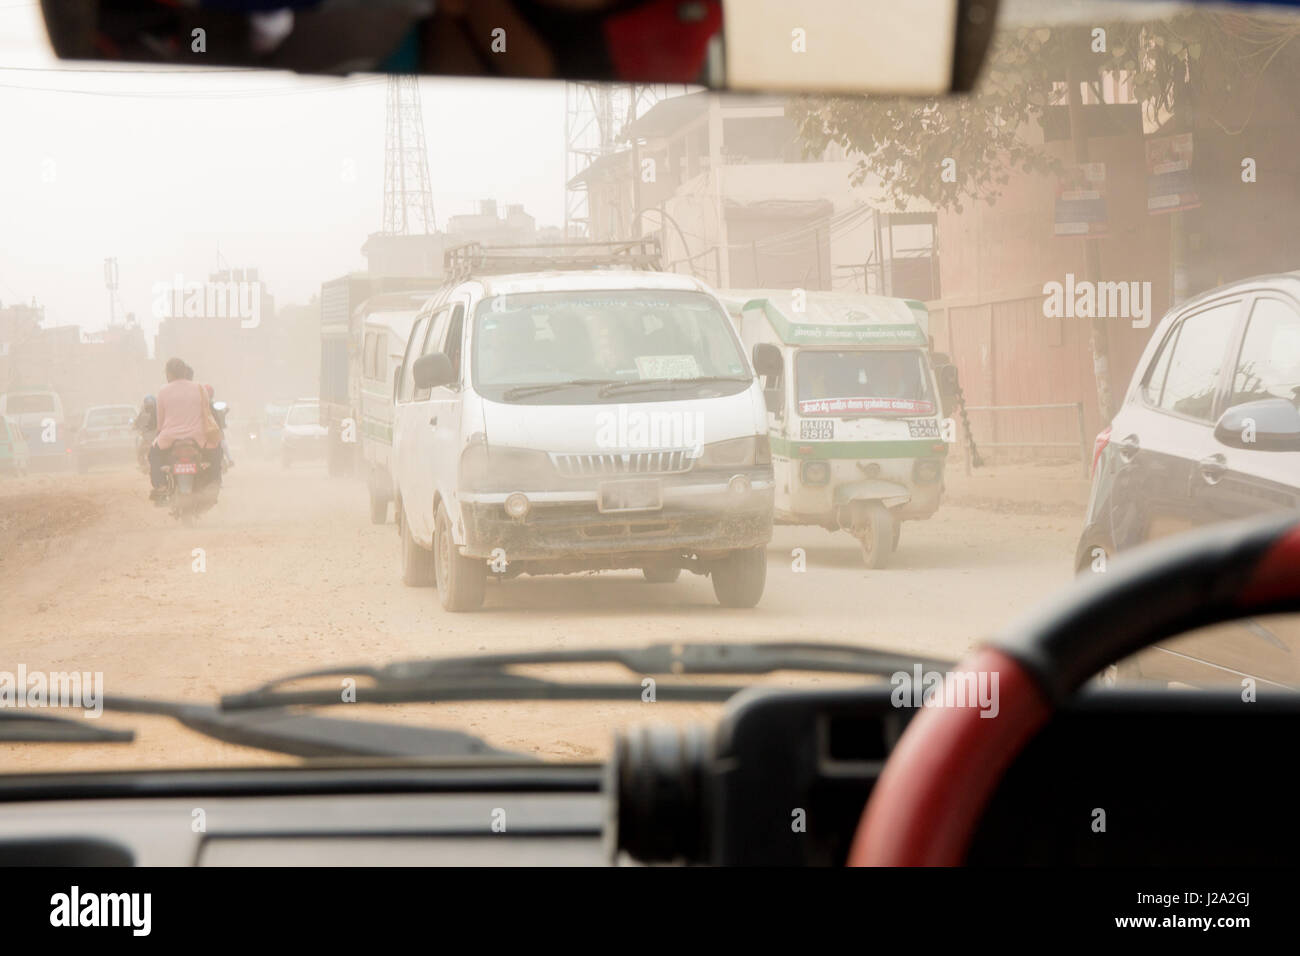 Juncales de tráfico a través de un extremadamente polvorienta y contaminada i street en Katmandú, Nepal. Tomada desde el interior de un pequeño automóvil taxi. Foto de stock